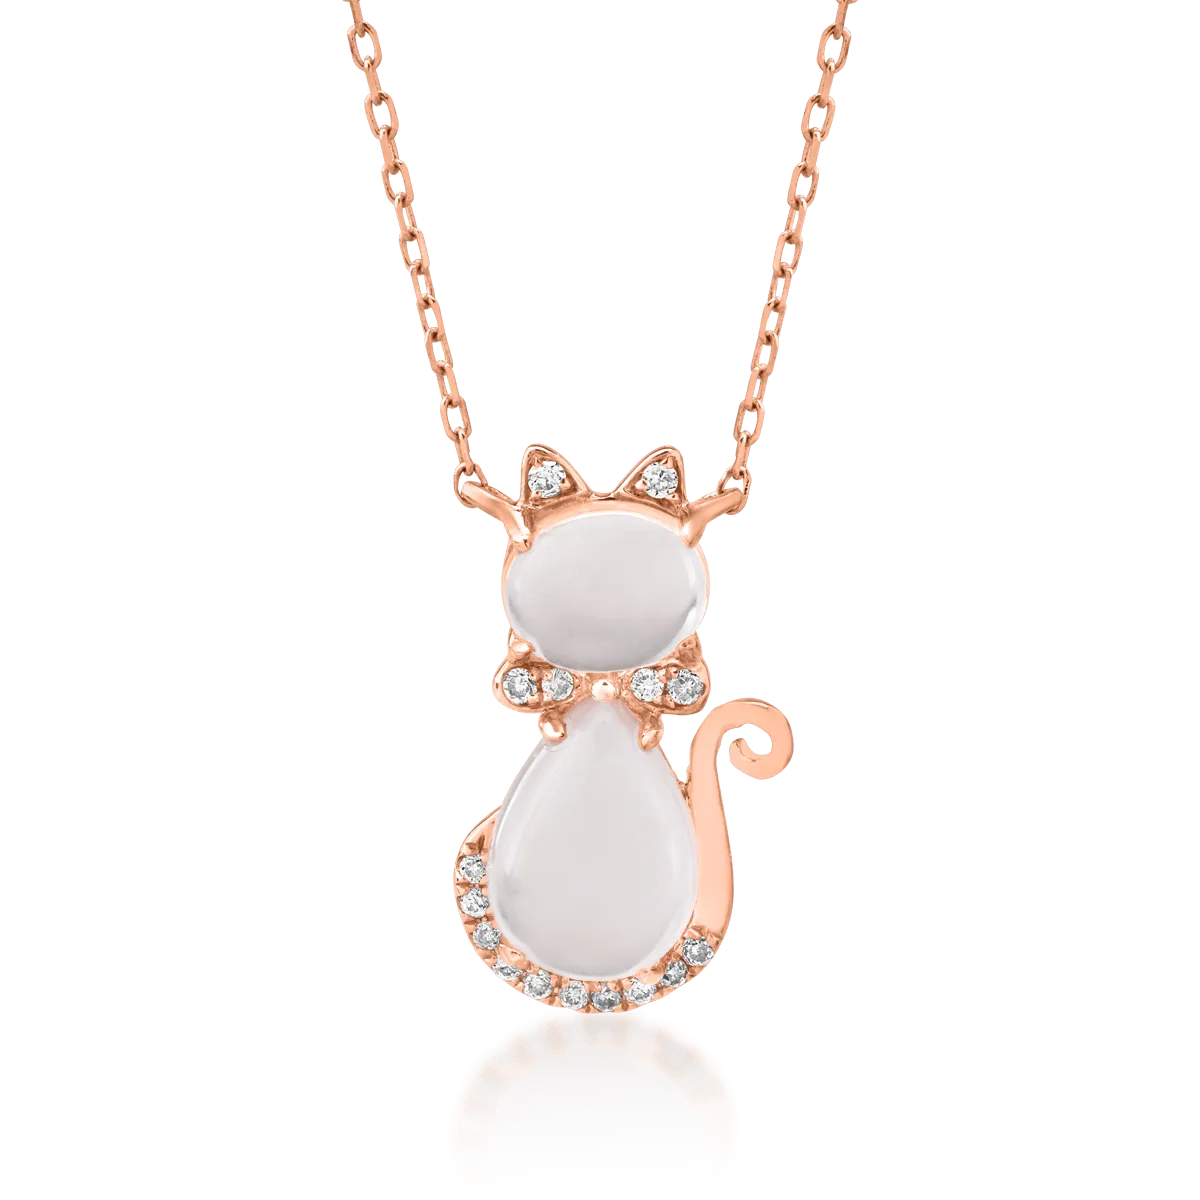 Rózaarany macska gyermek medál nyaklánc 1.3ct rózsakvarccal és 0.03ct gyémánttal